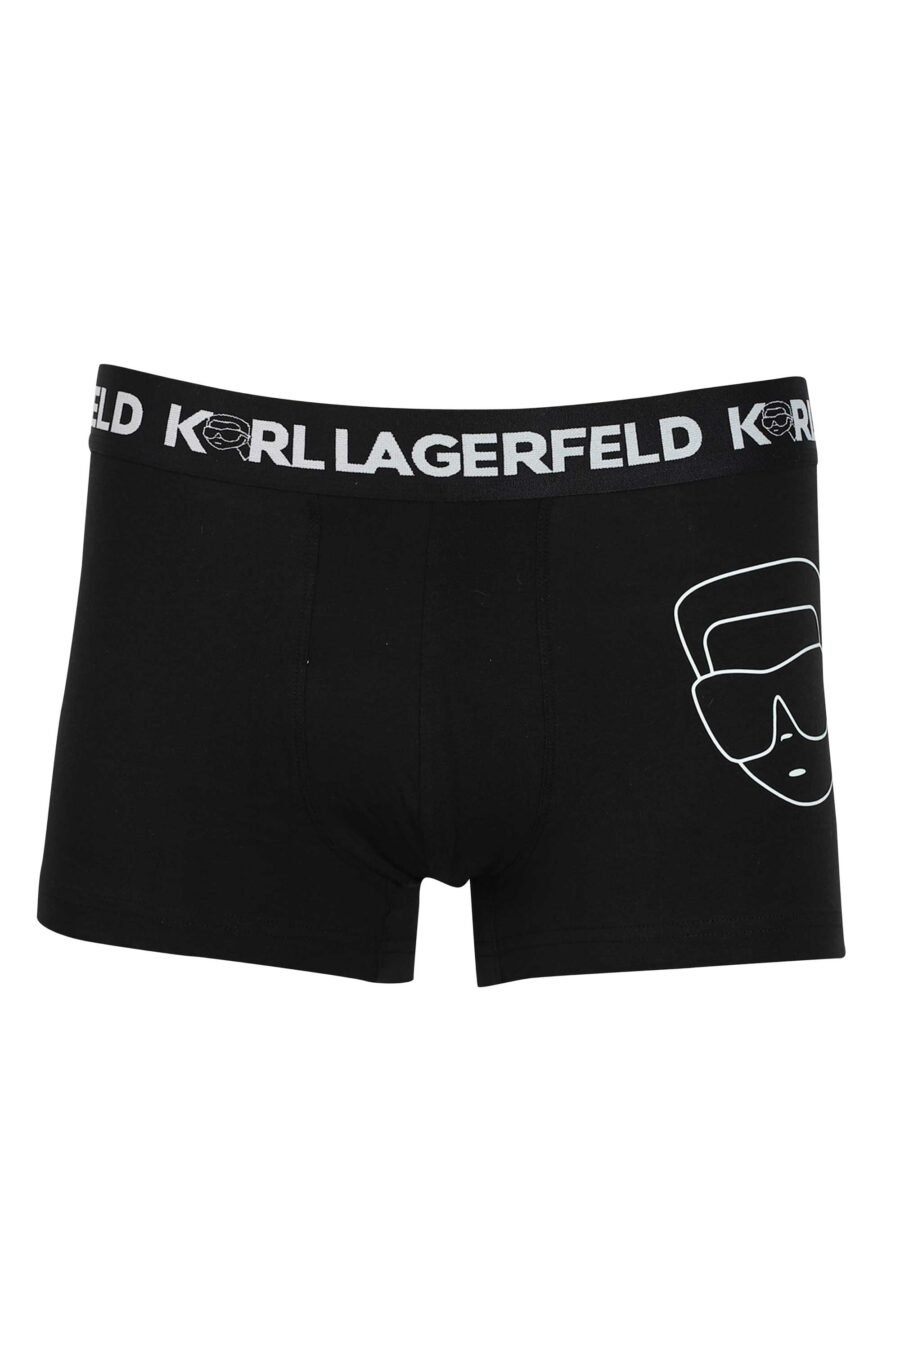 Pack de tres boxers negros con estampados diferentes "karl" - 8720744054580 5